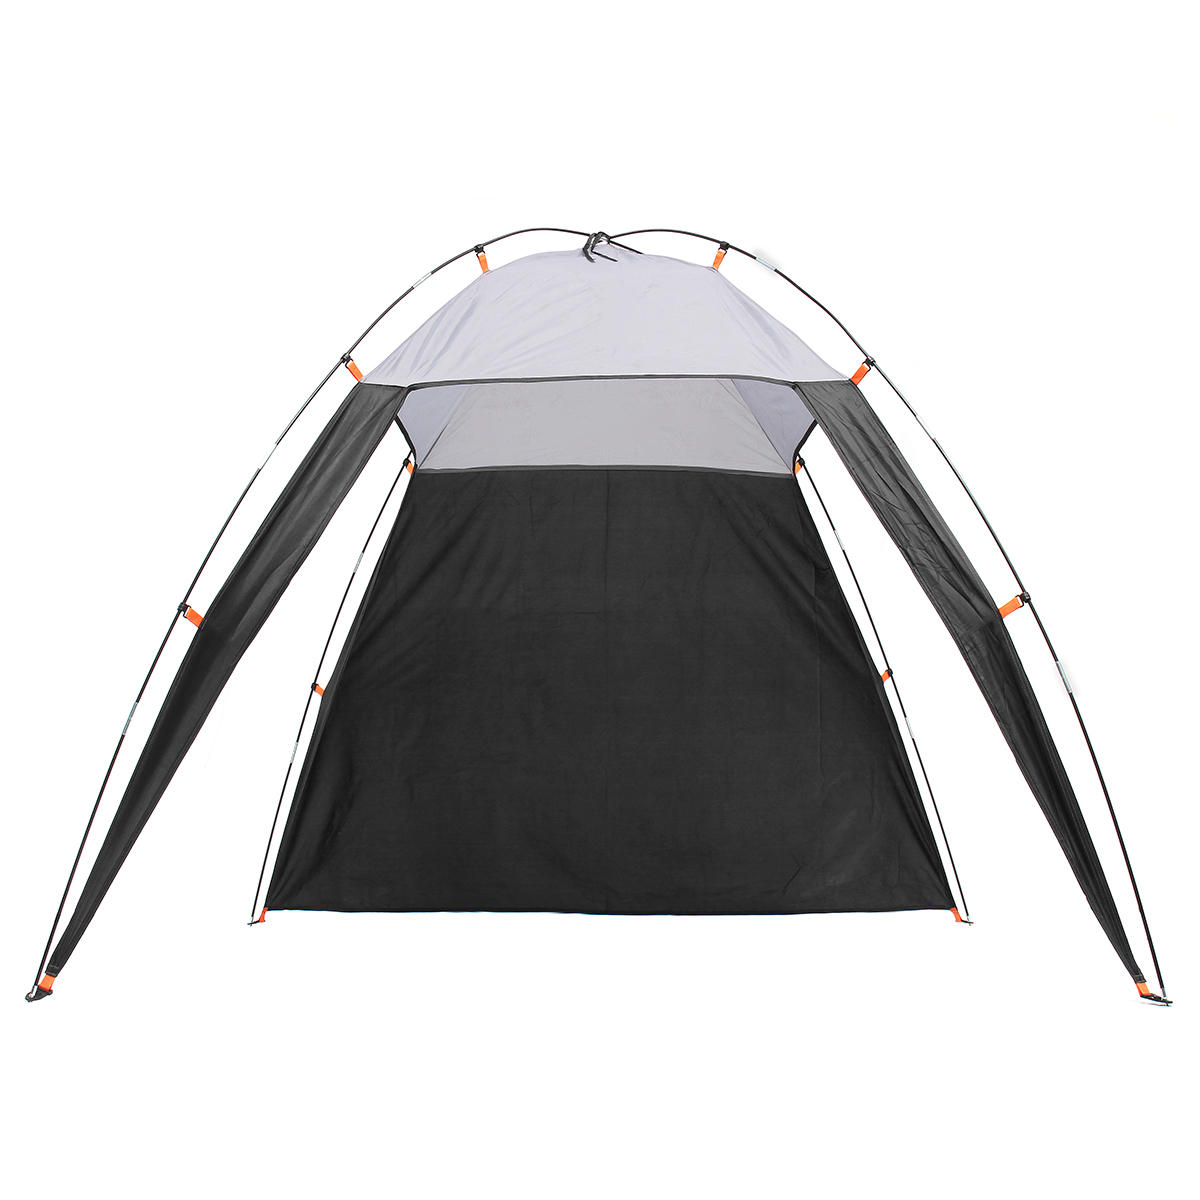 5-8人用の防水サンシェード付き三角テント、キャンプやハイキングでのビーチでの使用に最適。